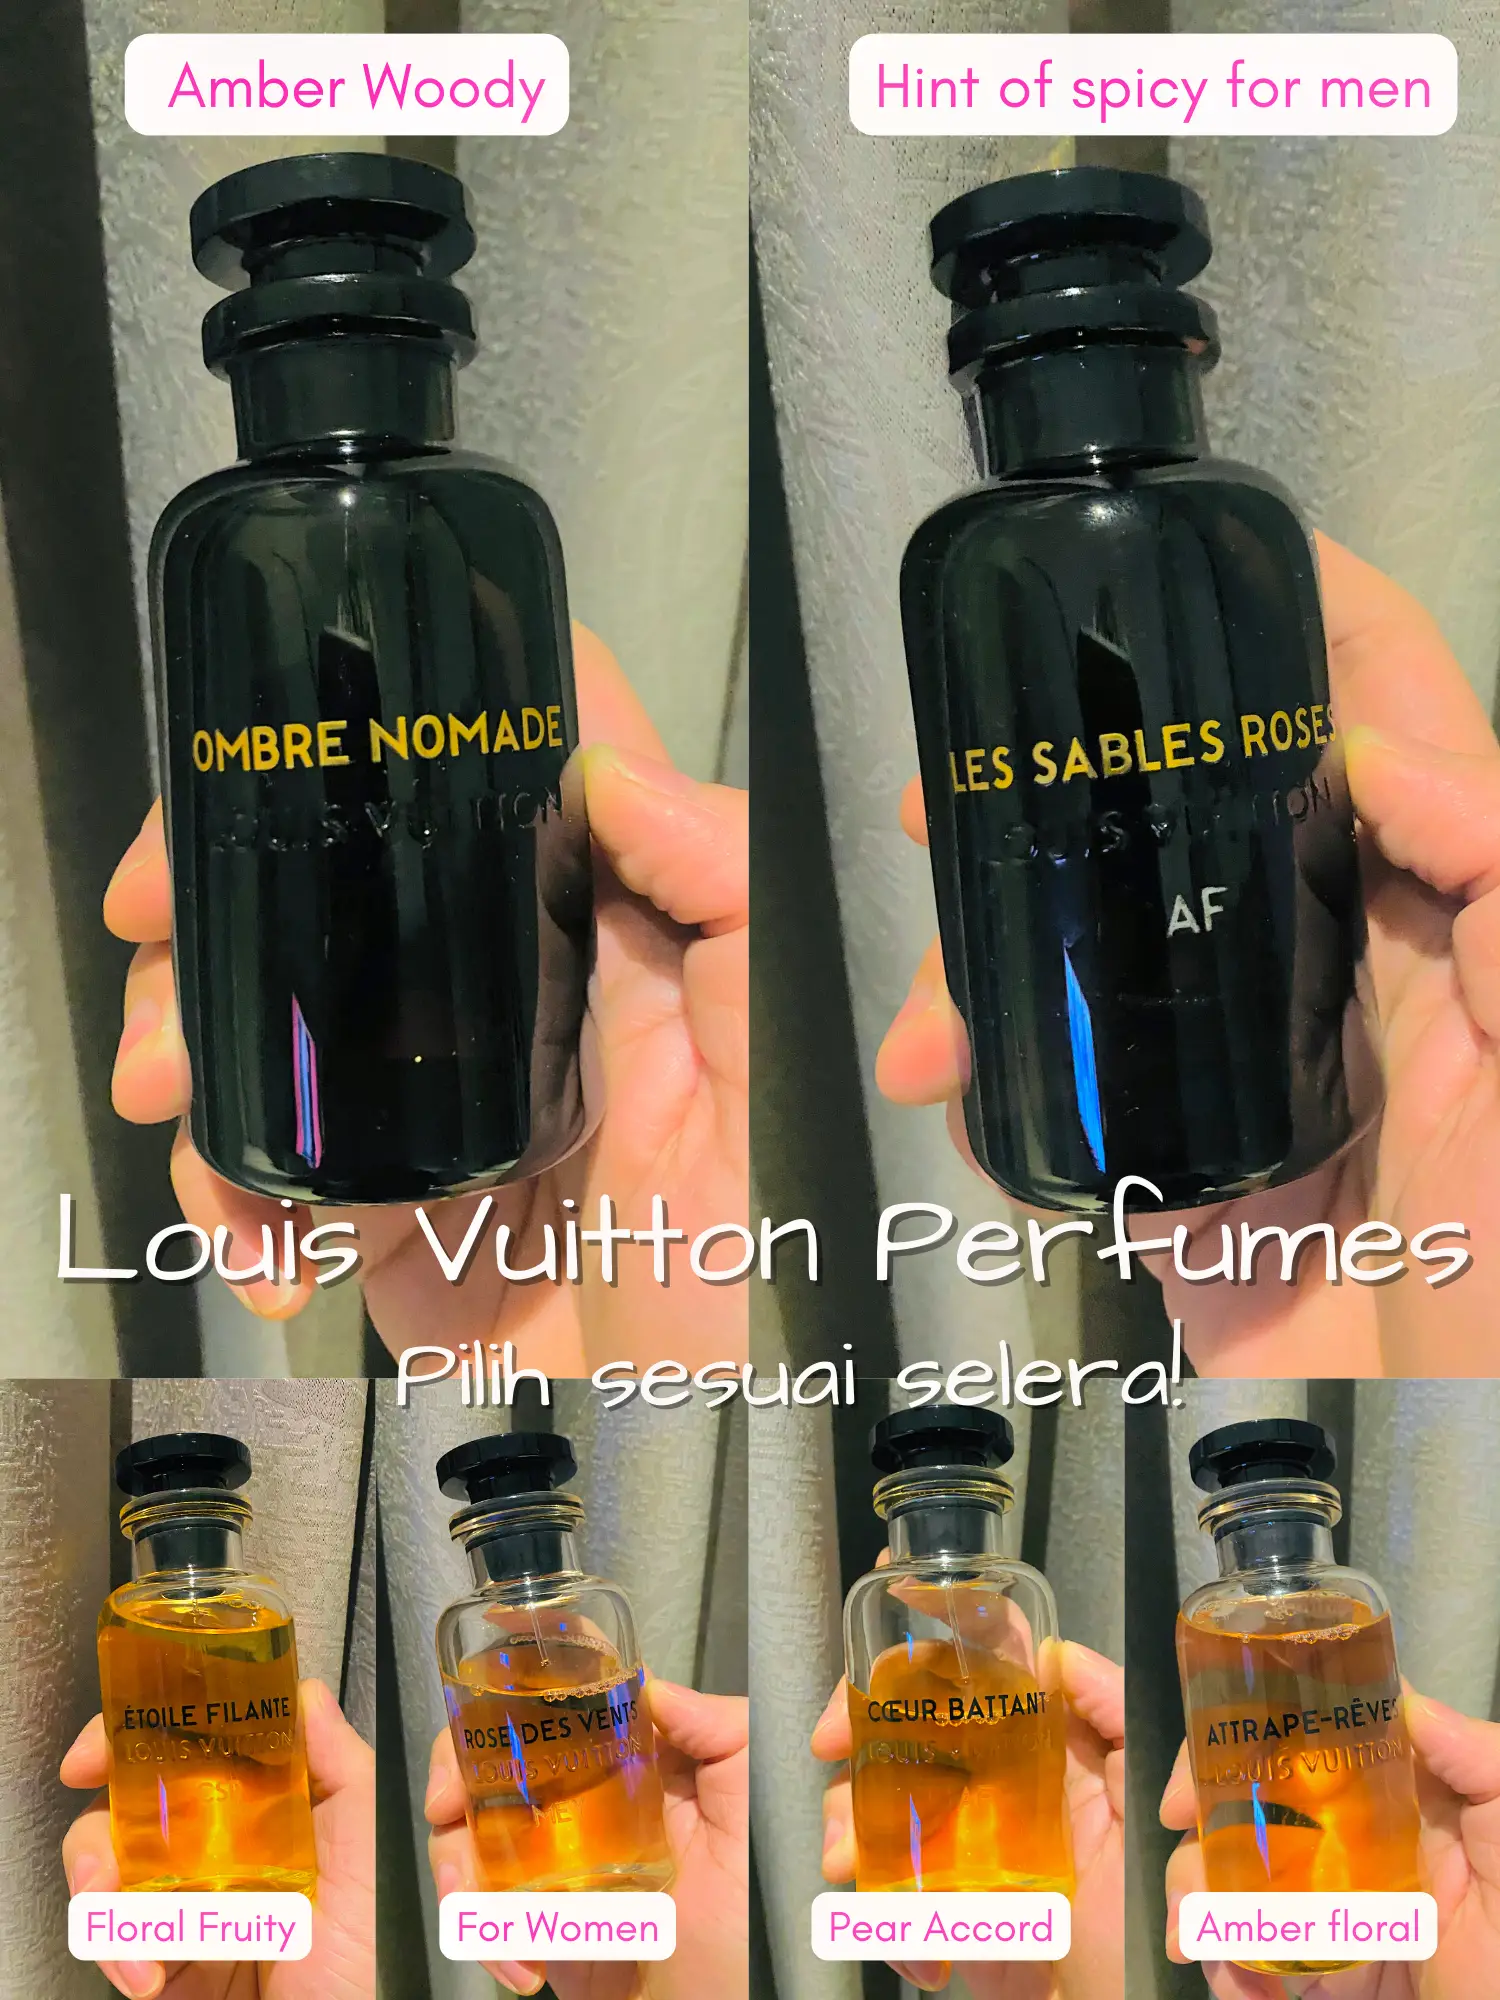 Menghirup Aroma Polkadot di Koleksi Parfum Louis Vuitton x Yayoi